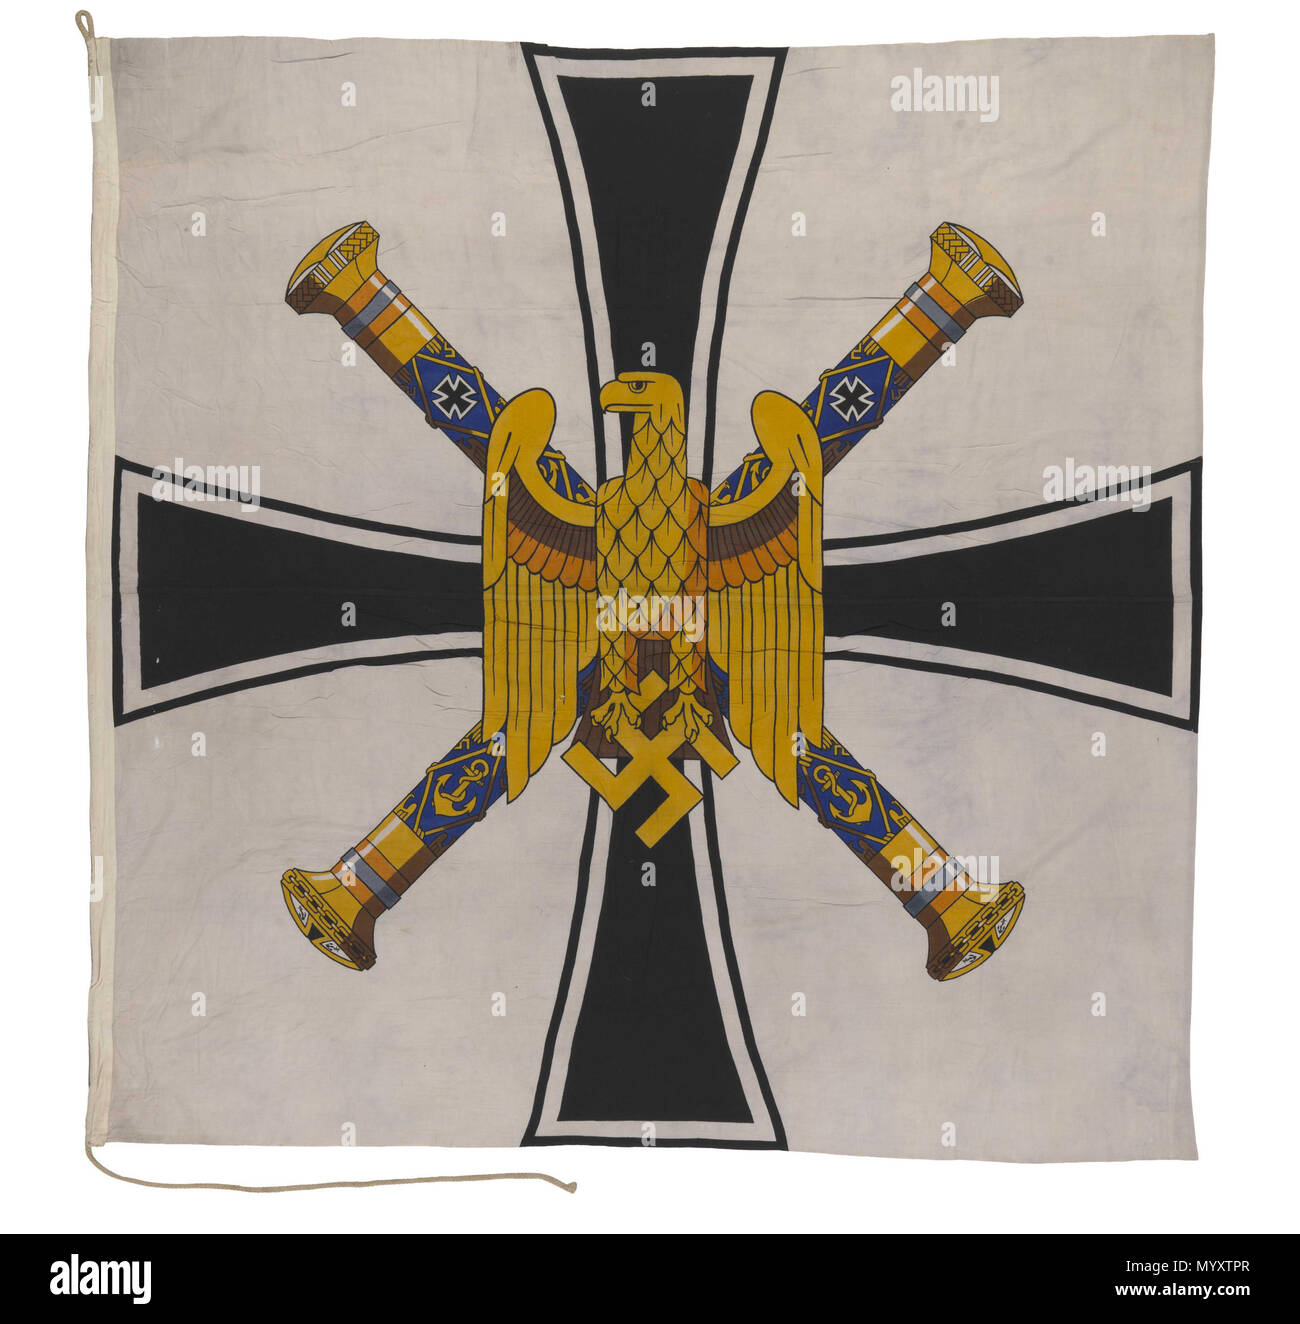 . Anglais : commande drapeau, amiral de la flotte, l'Allemagne nazie (1943-1945) drapeau de la commande d'un amiral de la flotte, l'Allemagne nazie (1943-1945). Inscrit sur le palan : 'Flg Grossadmiral'. Le drapeau est fait de laine noir avec un coton d'un palan. C'est cousu machine avec le dessin imprimé sur le tissu. Une corde est attachée à hisser le drapeau. Le champ est blanc, portant une croix pattée noire sur laquelle se superpose deux traversé l'admiral's matraque et un aigle tenant la croix gammée. L'origine est incertaine, mais le drapeau est susceptible d'avoir été présenté par le Comité des trophées de guerre en 1947. Drapeau de la commande Banque D'Images